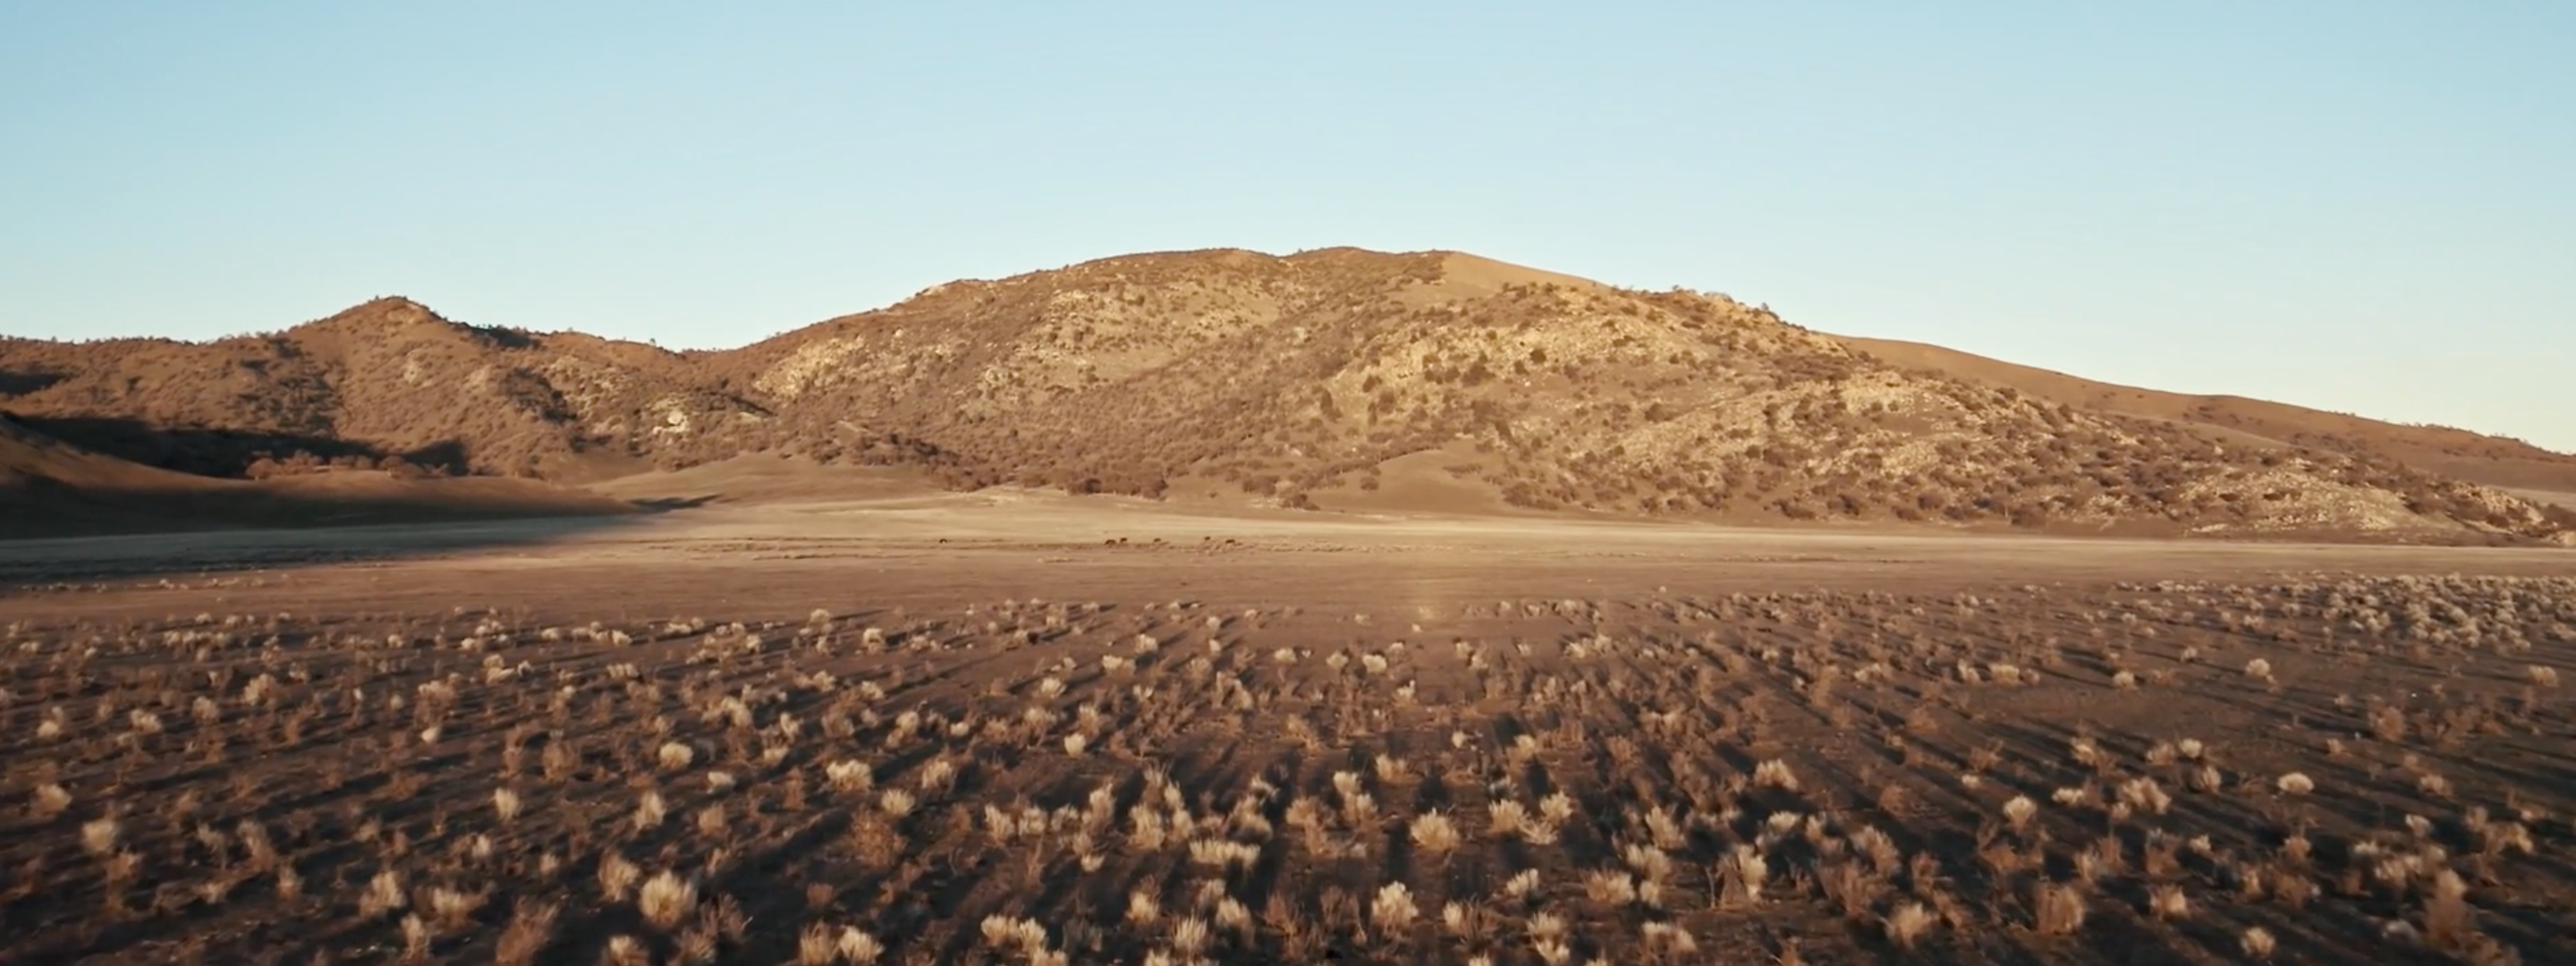 <a href="https://www.capgemini.com/news/inside-stories/mojave-desert/"></a><a href="https://www.capgemini.com/ch-en/news/inside-stories/mojave-desert/">The Mojave Desert: Data for tortoises and tires</a>